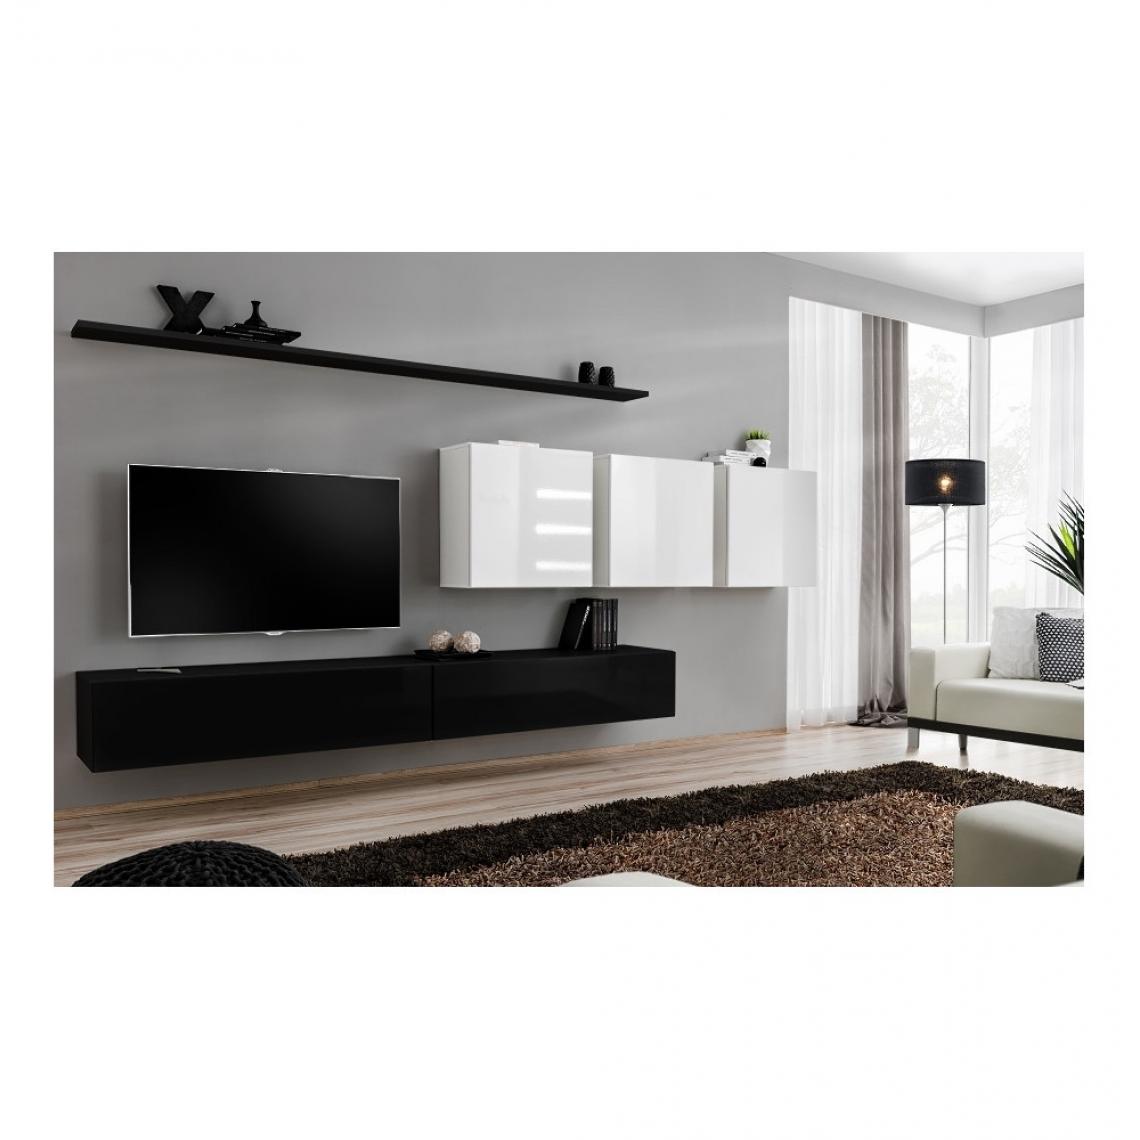 Ac-Deco - Ensemble meuble TV mural - Switch VII - 340 cm x 150 cm x 40 cm - Noir et blanc - Meubles TV, Hi-Fi